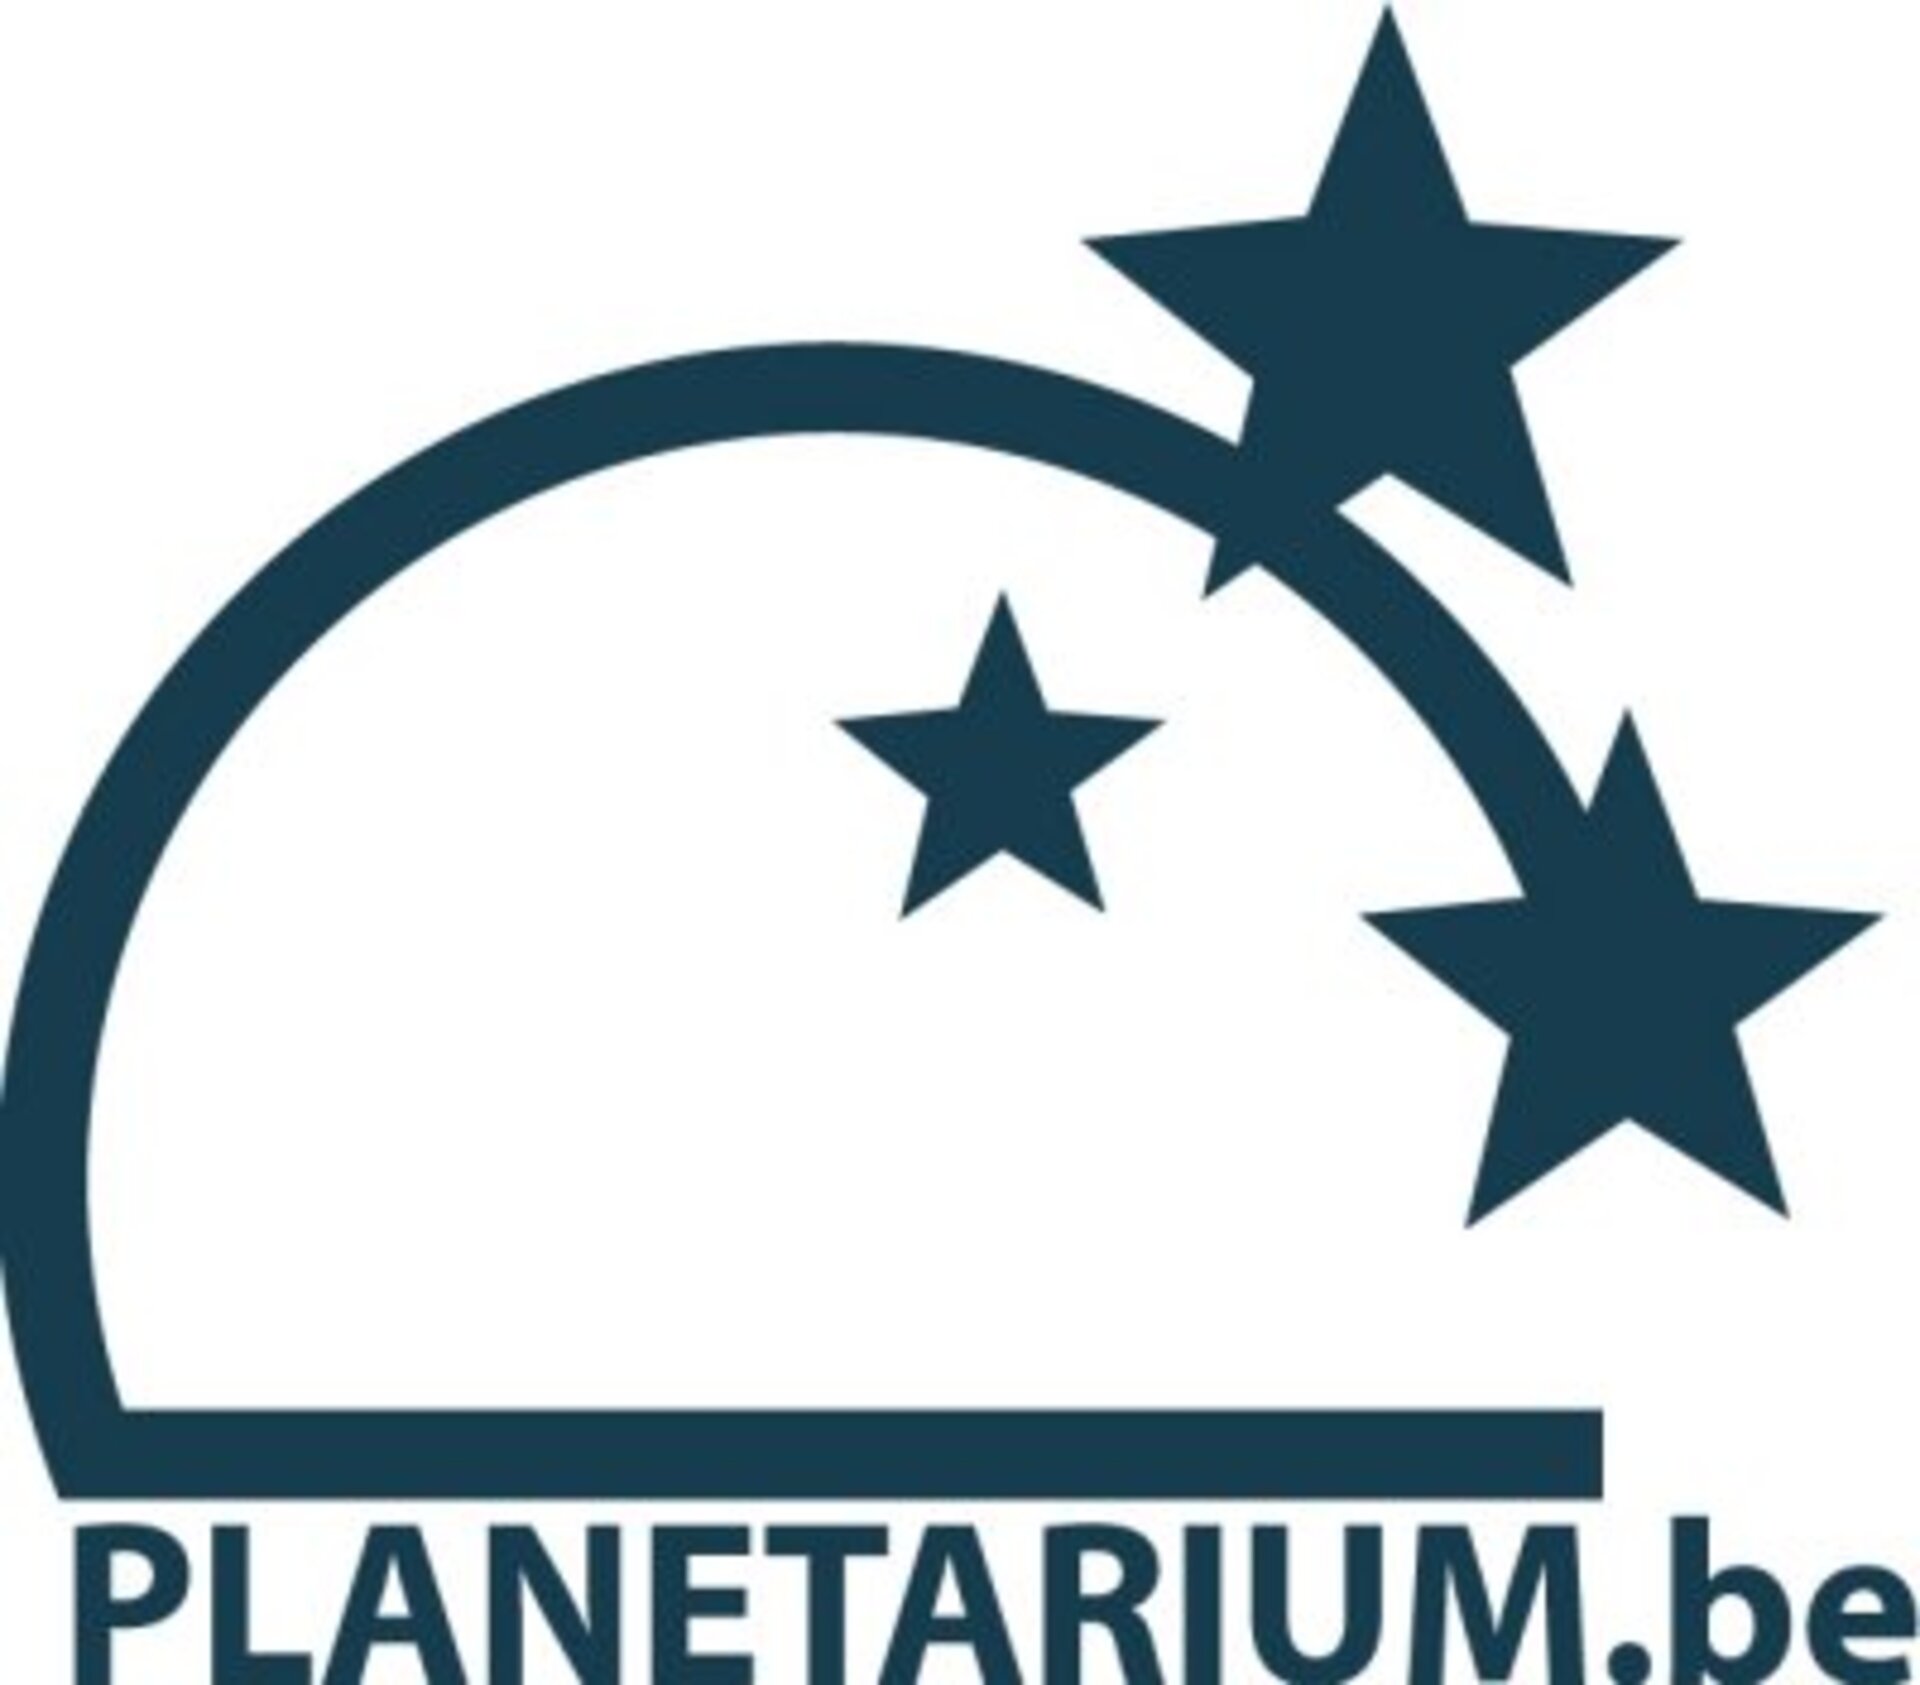 Planetarium.jpg